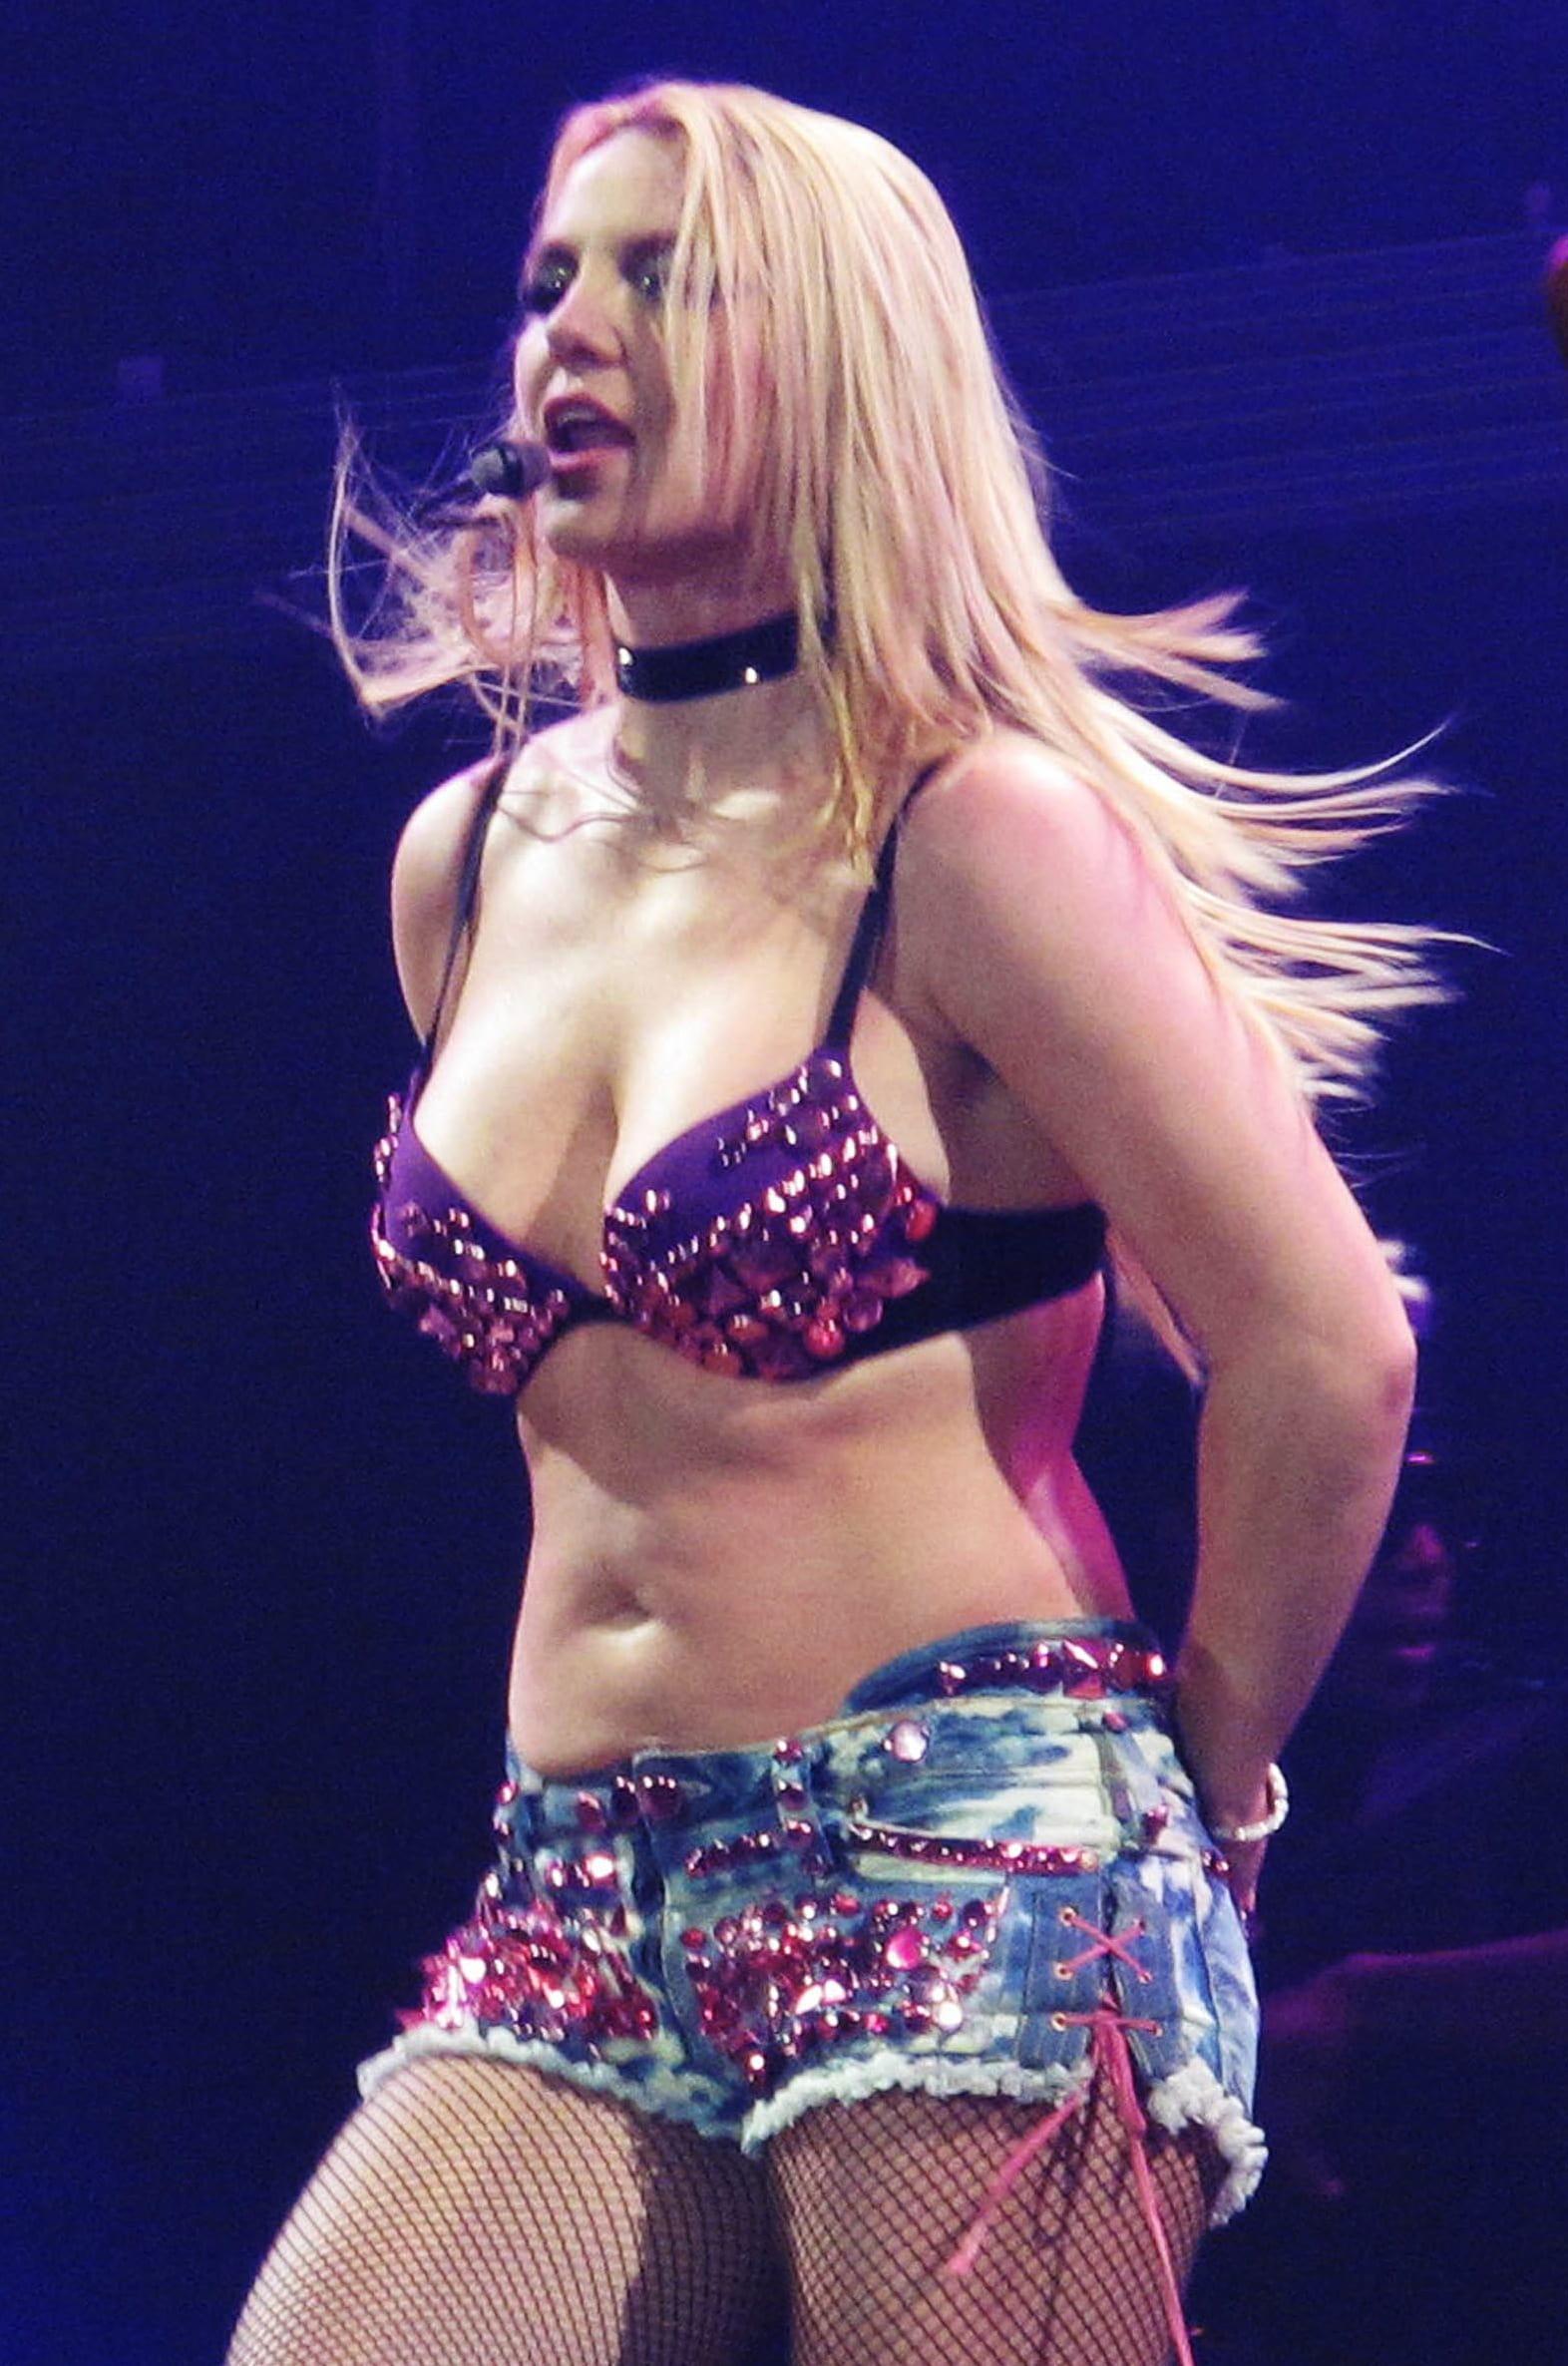 Britney spears bikini in concert